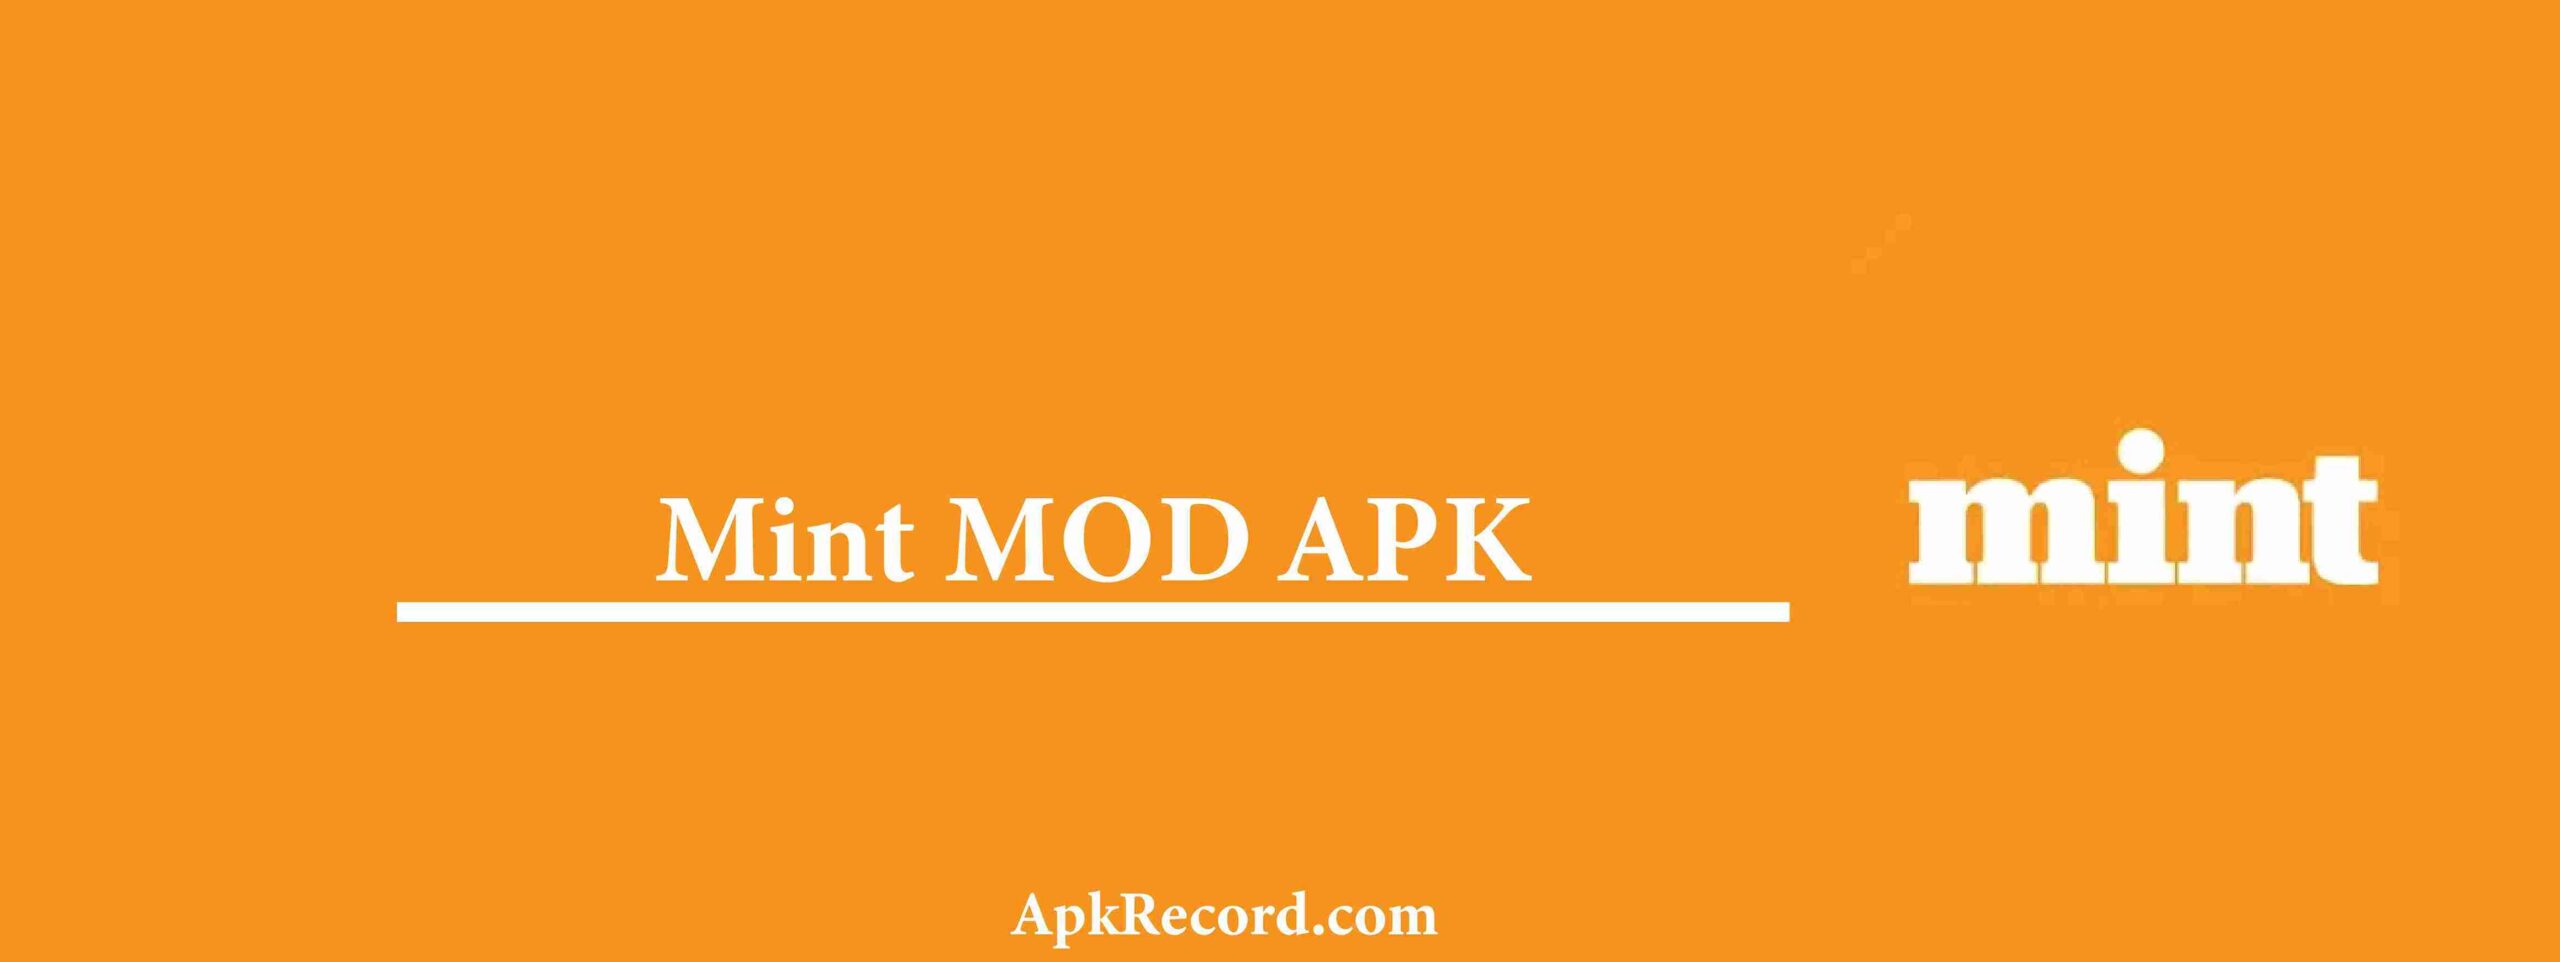 Mint MOD APK V5.4.7